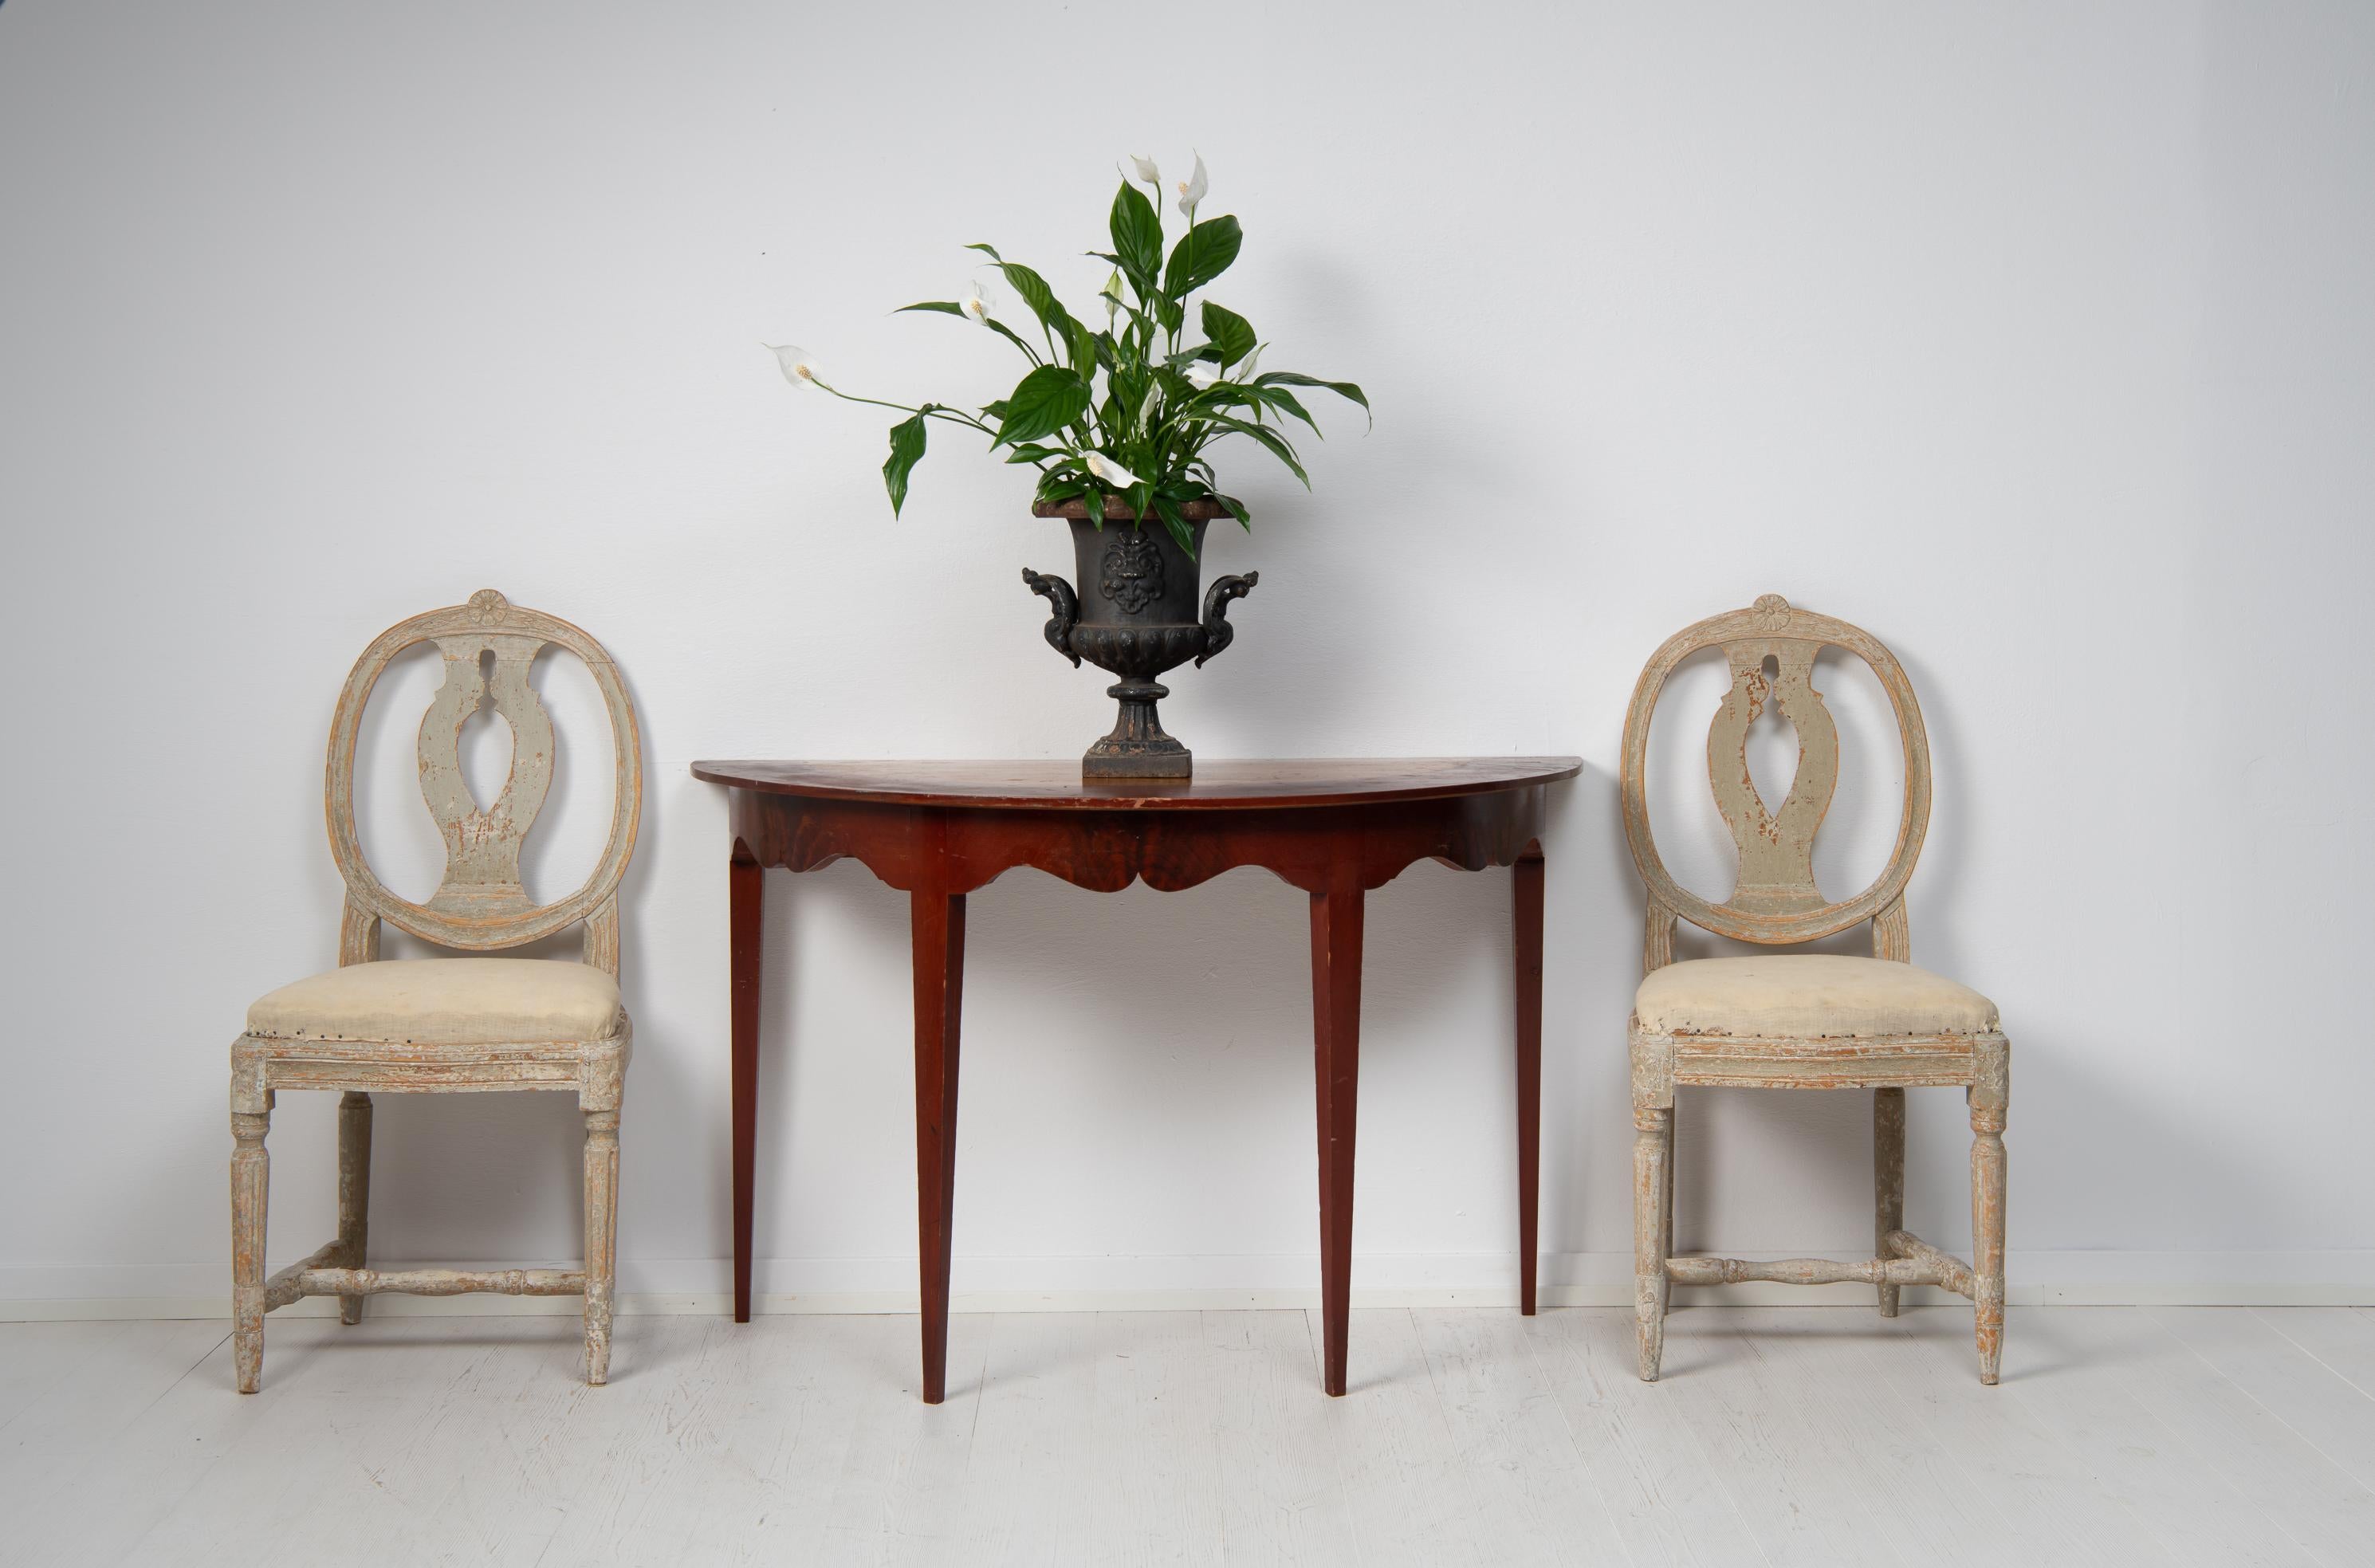 Nordschwedischer Konsolentisch im gustavianischen Stil aus der Mitte des 19. Jahrhunderts, um 1860. Der Tisch stammt aus Nordschweden und ist ein so genannter Demi-Lune-Tisch, der in einem Halbkreis gefertigt ist. Der Tisch hat vier gerade, konische